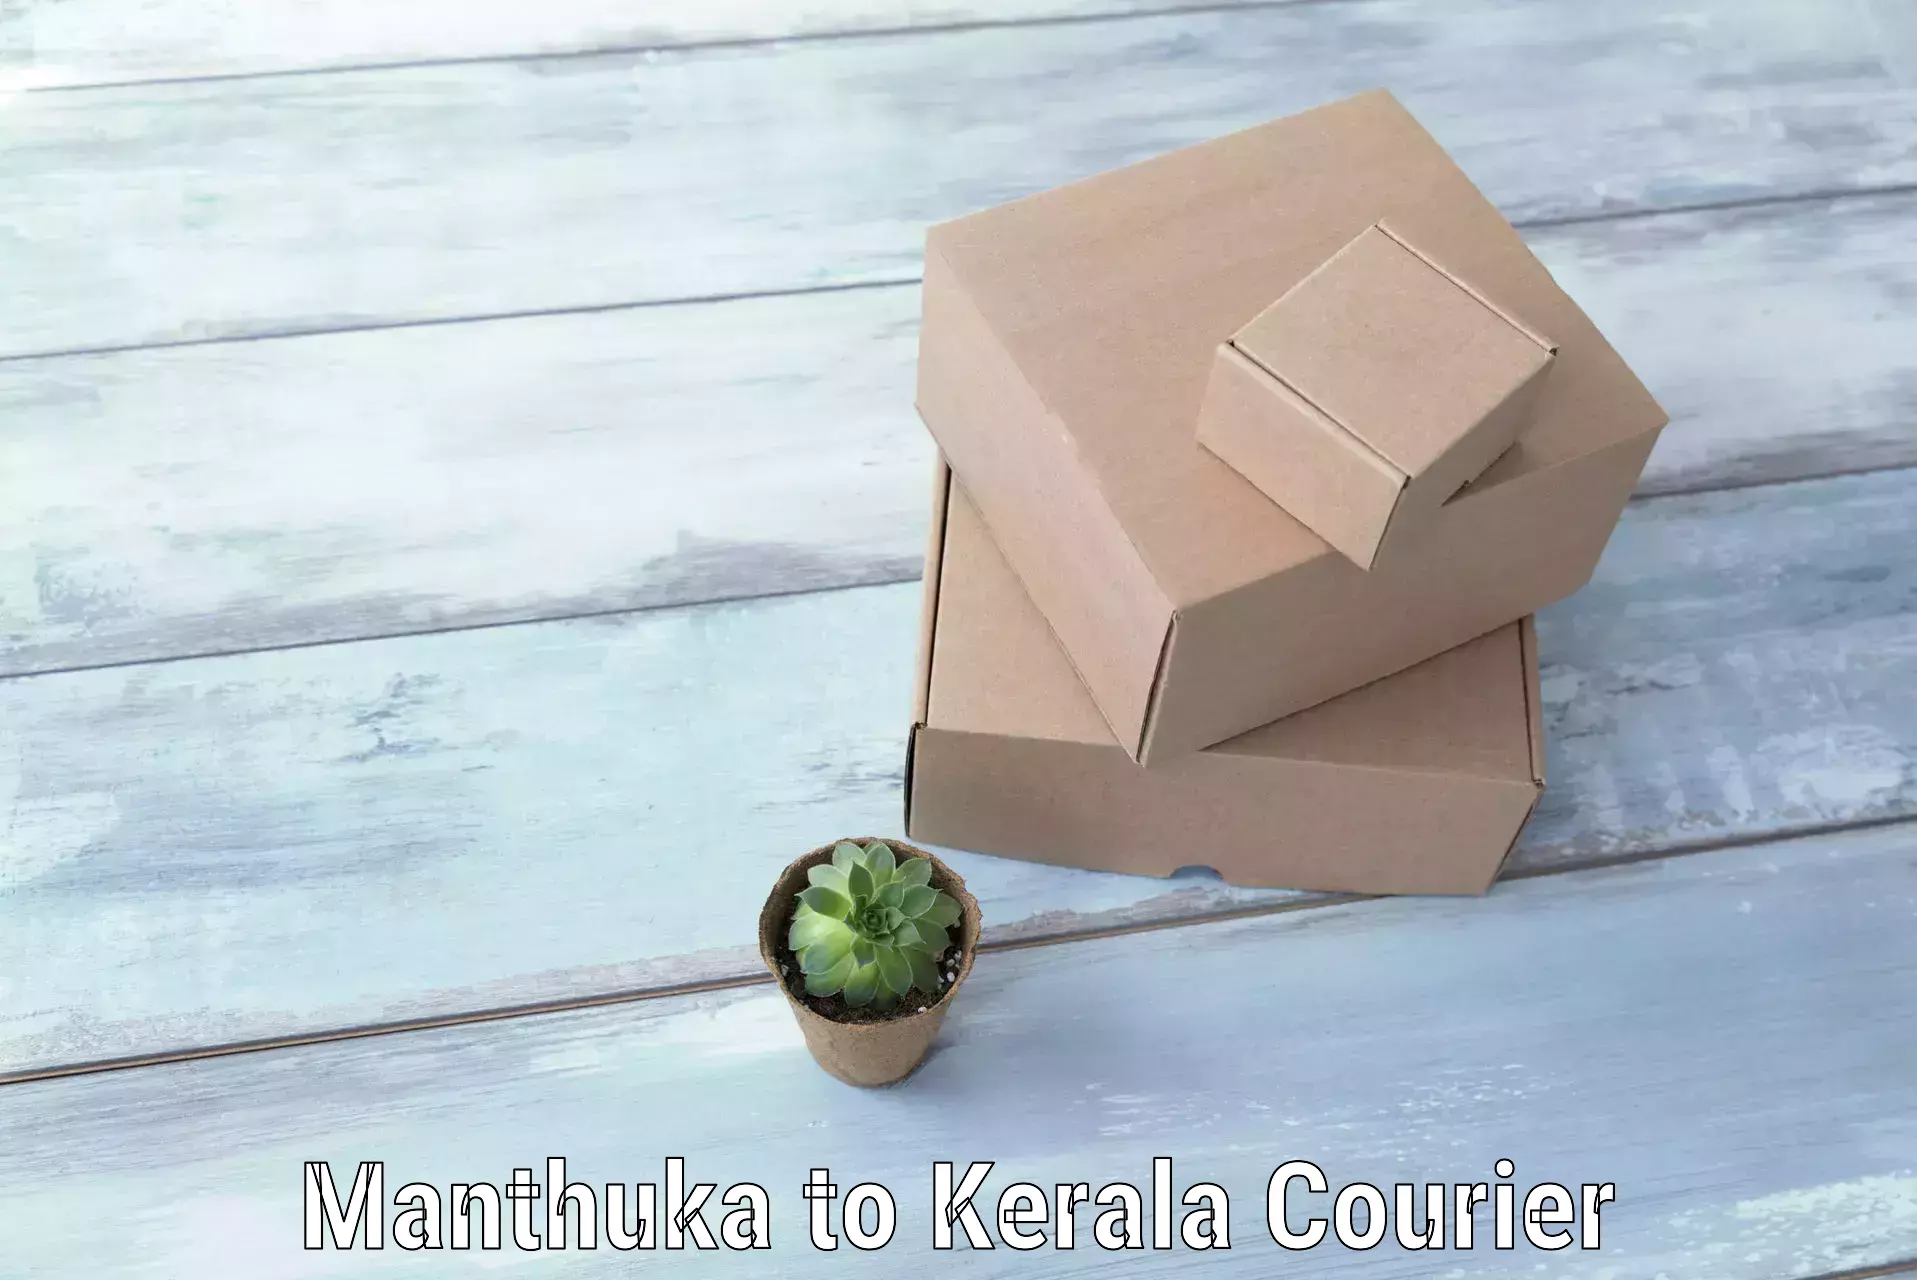 Baggage transport professionals Manthuka to Kerala